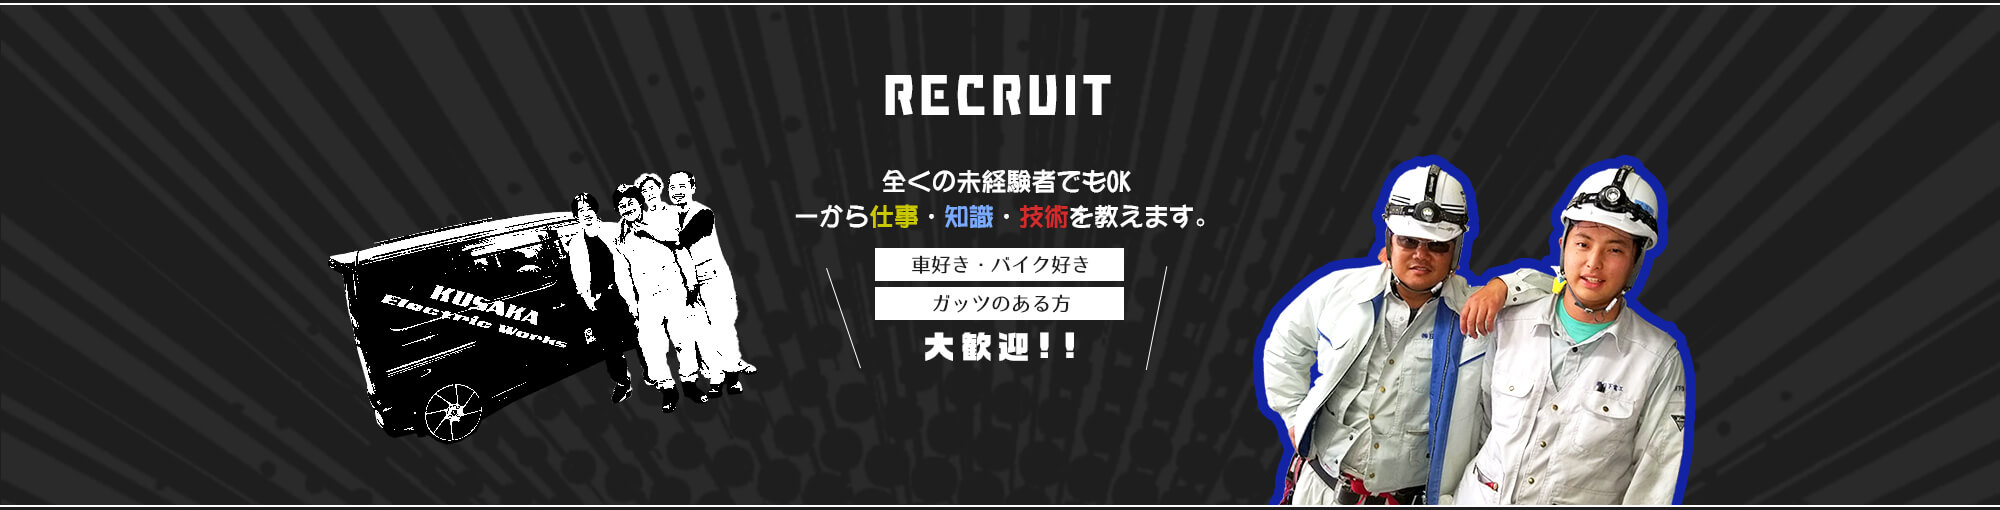 bnr02_recruit